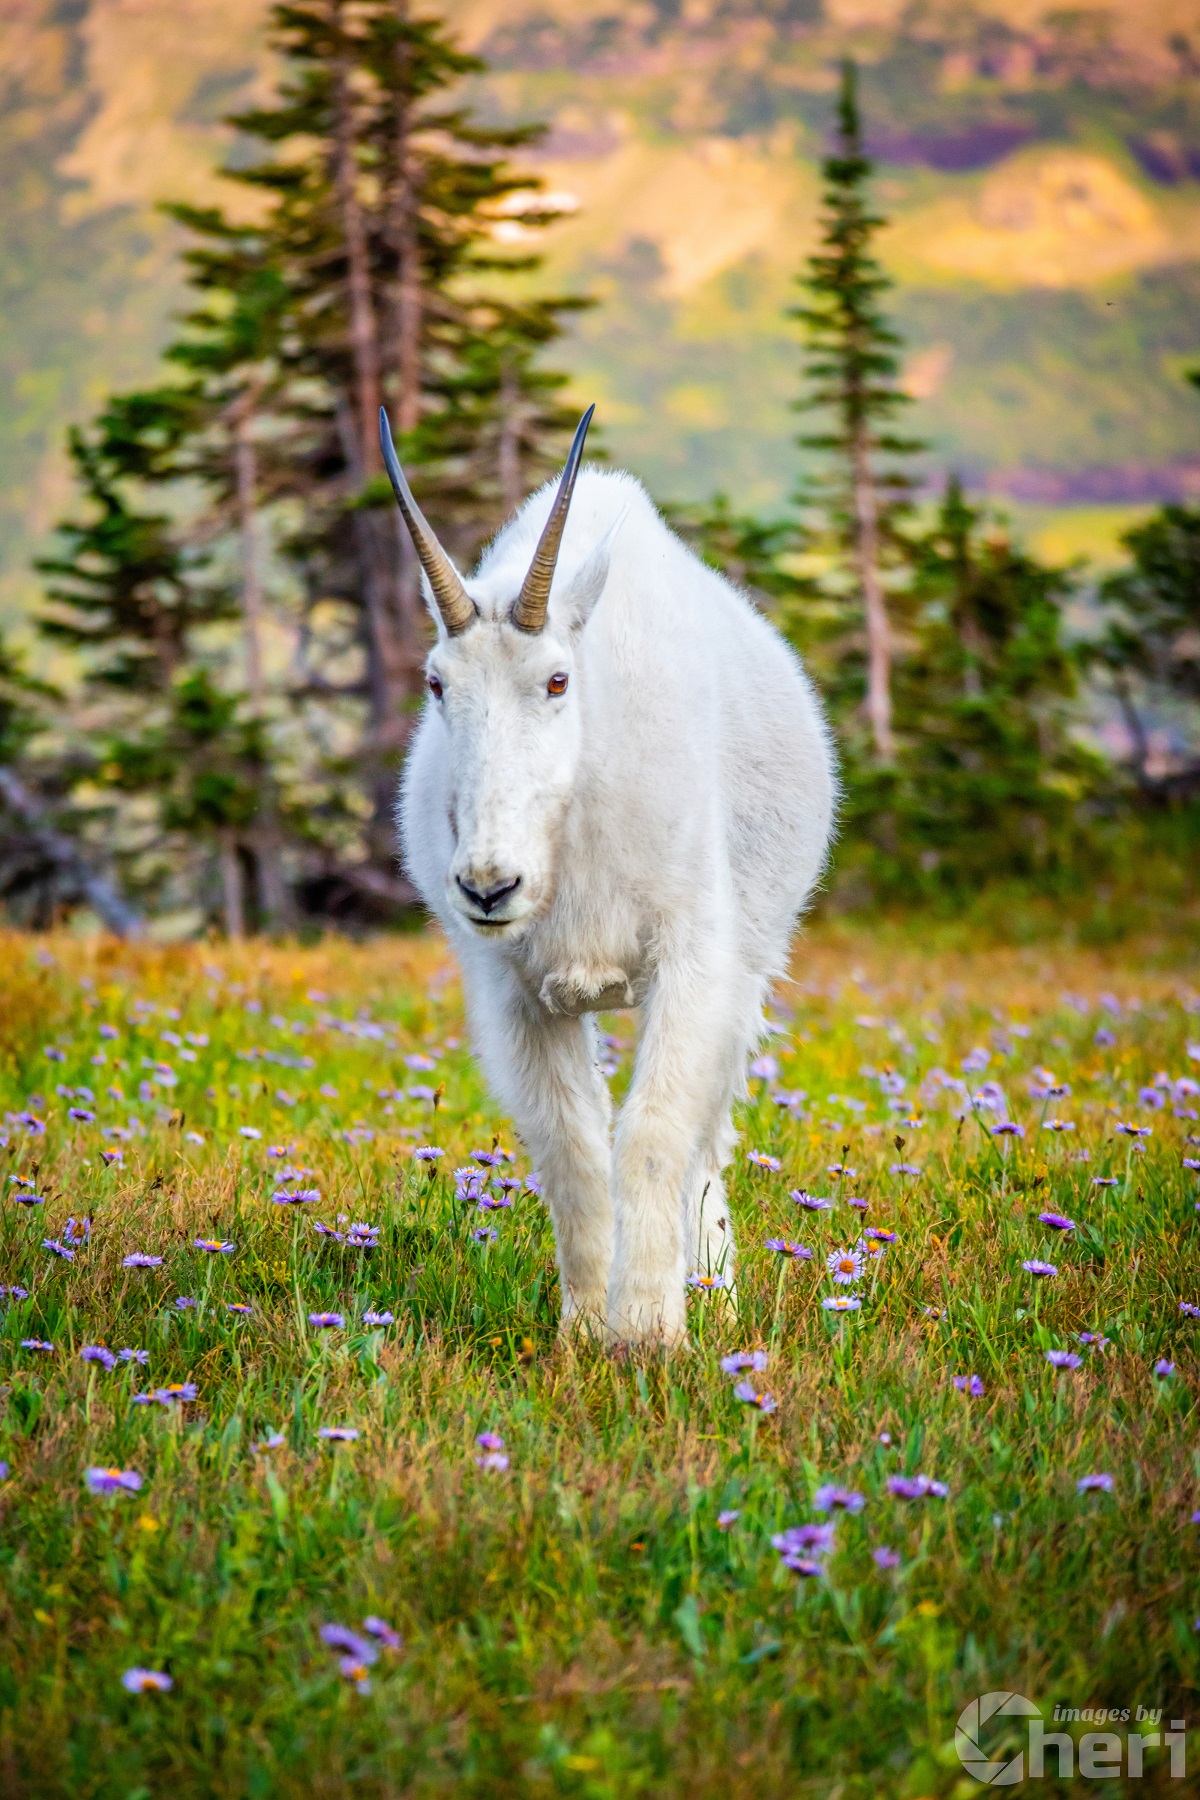 Alpine Majesty: Glacier Mountain Goat